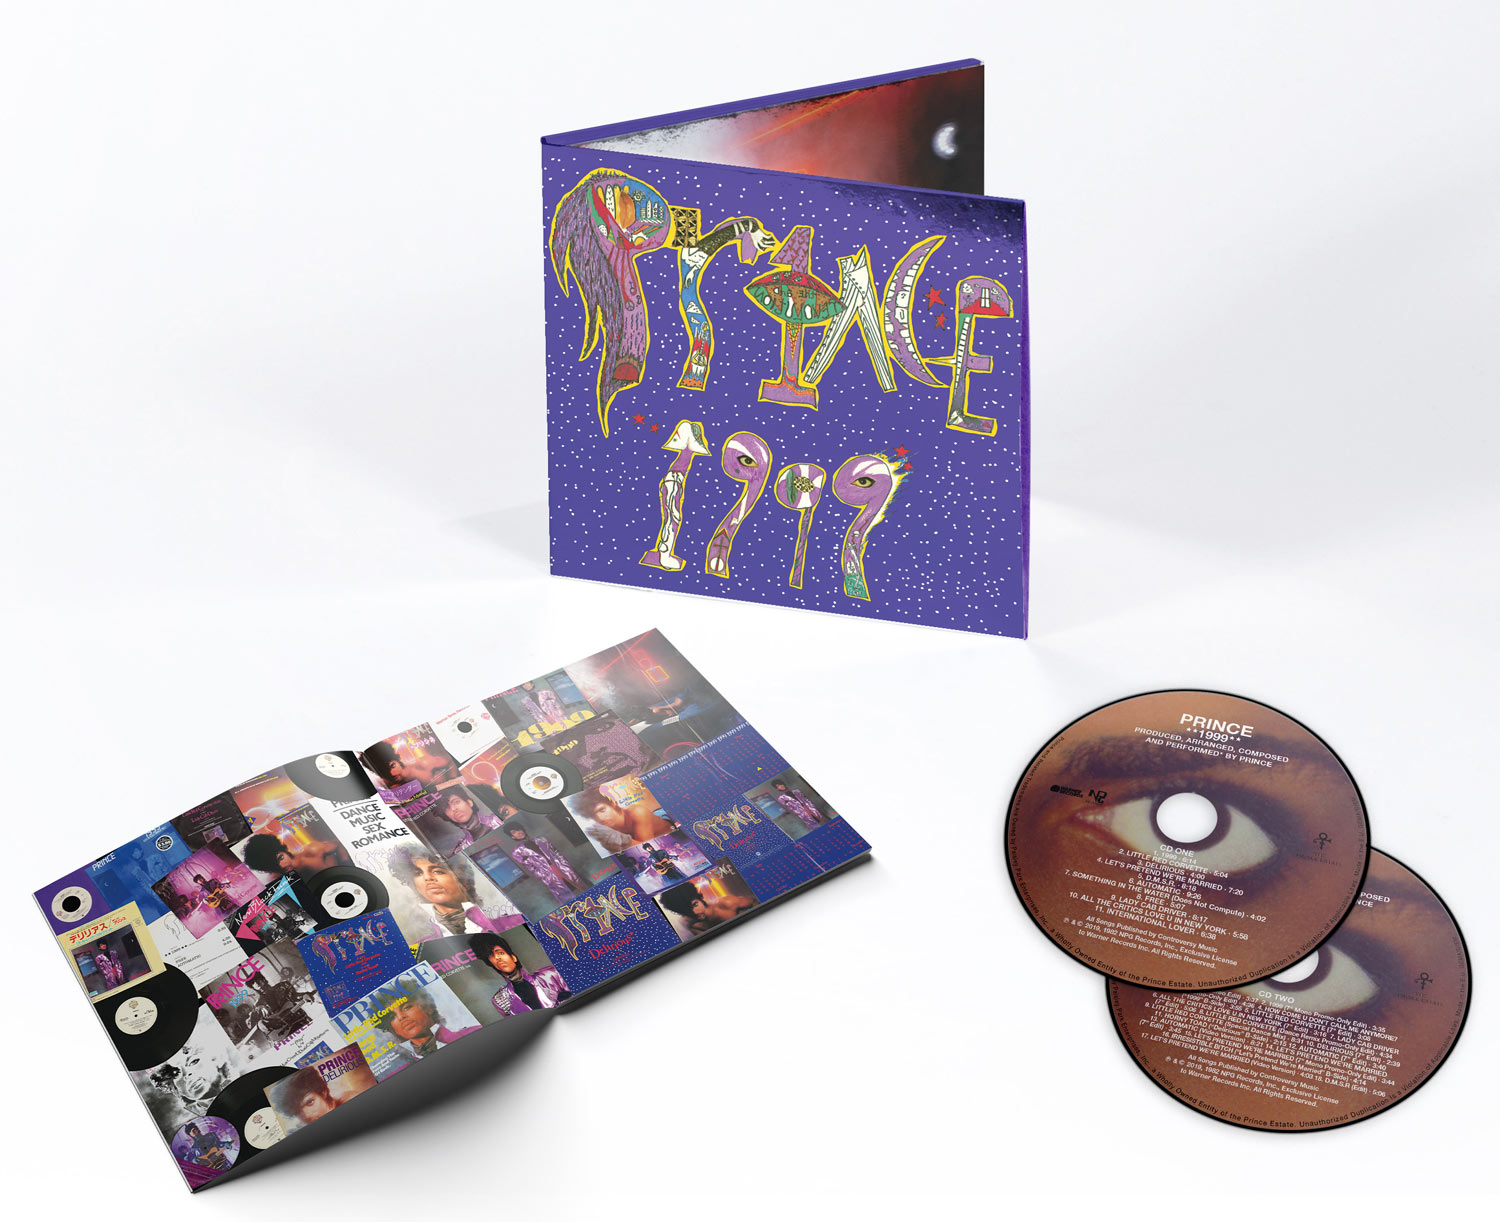 prince album 1999 super deluxe download winrar